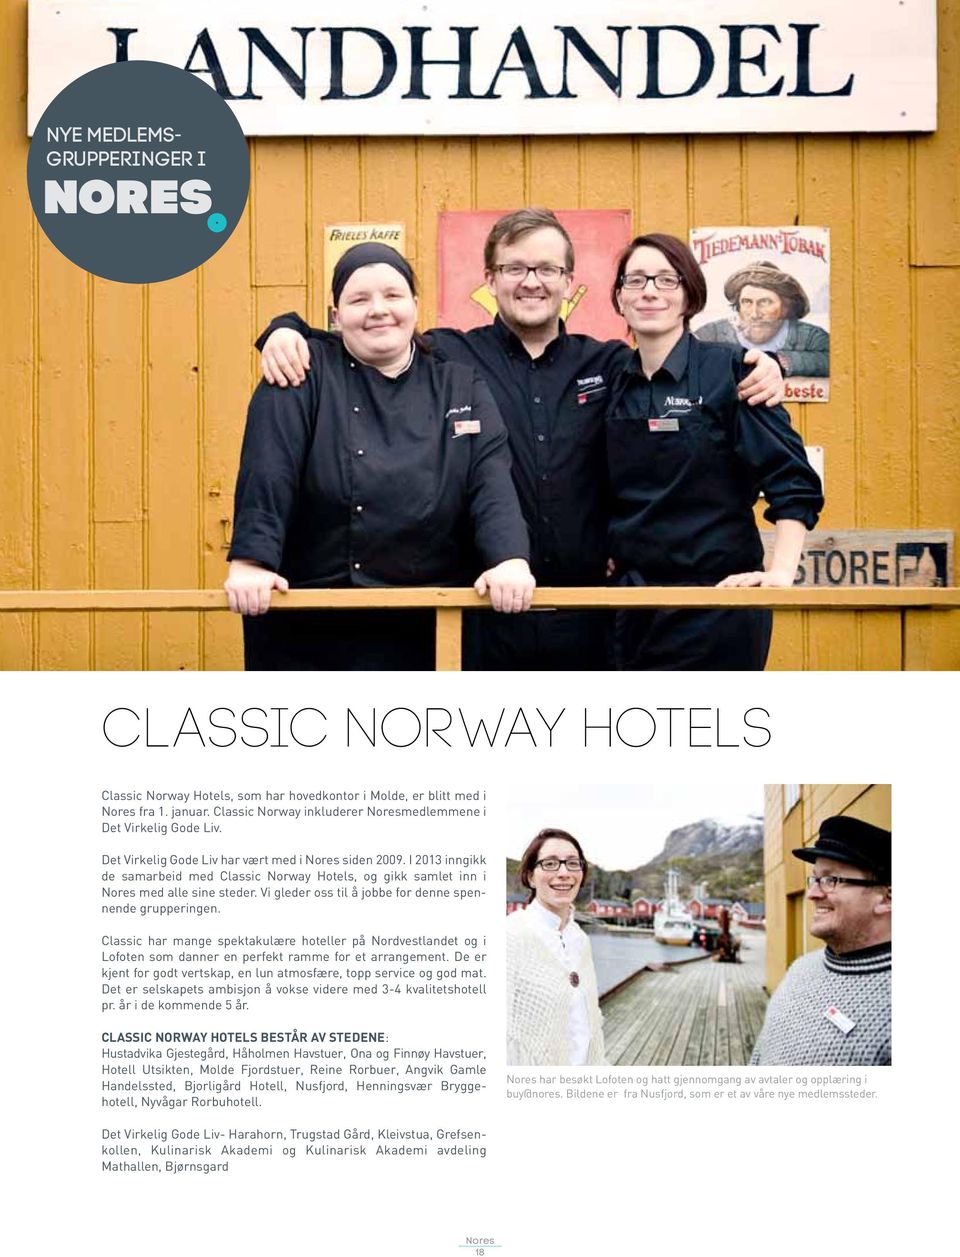 I 2013 inngikk de samarbeid med Classic Norway Hotels, og gikk samlet inn i nores med alle sine steder. Vi gleder oss til å jobbe for denne spennende grupperingen.